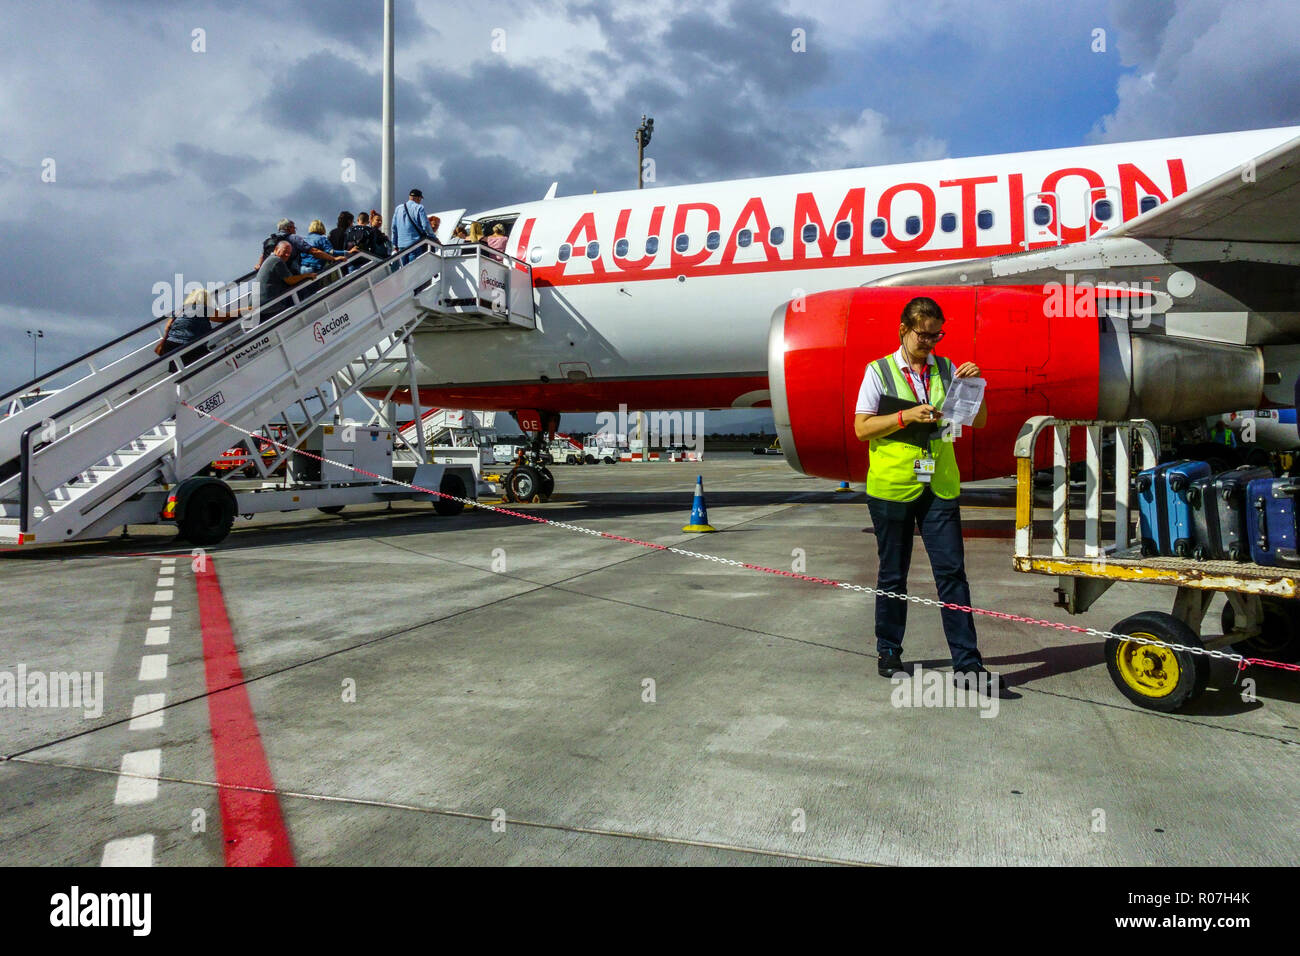 L'embarquement des passagers à l'avion Airbus A320 Lauda motion, Palma de Mallorca, Espagne Banque D'Images